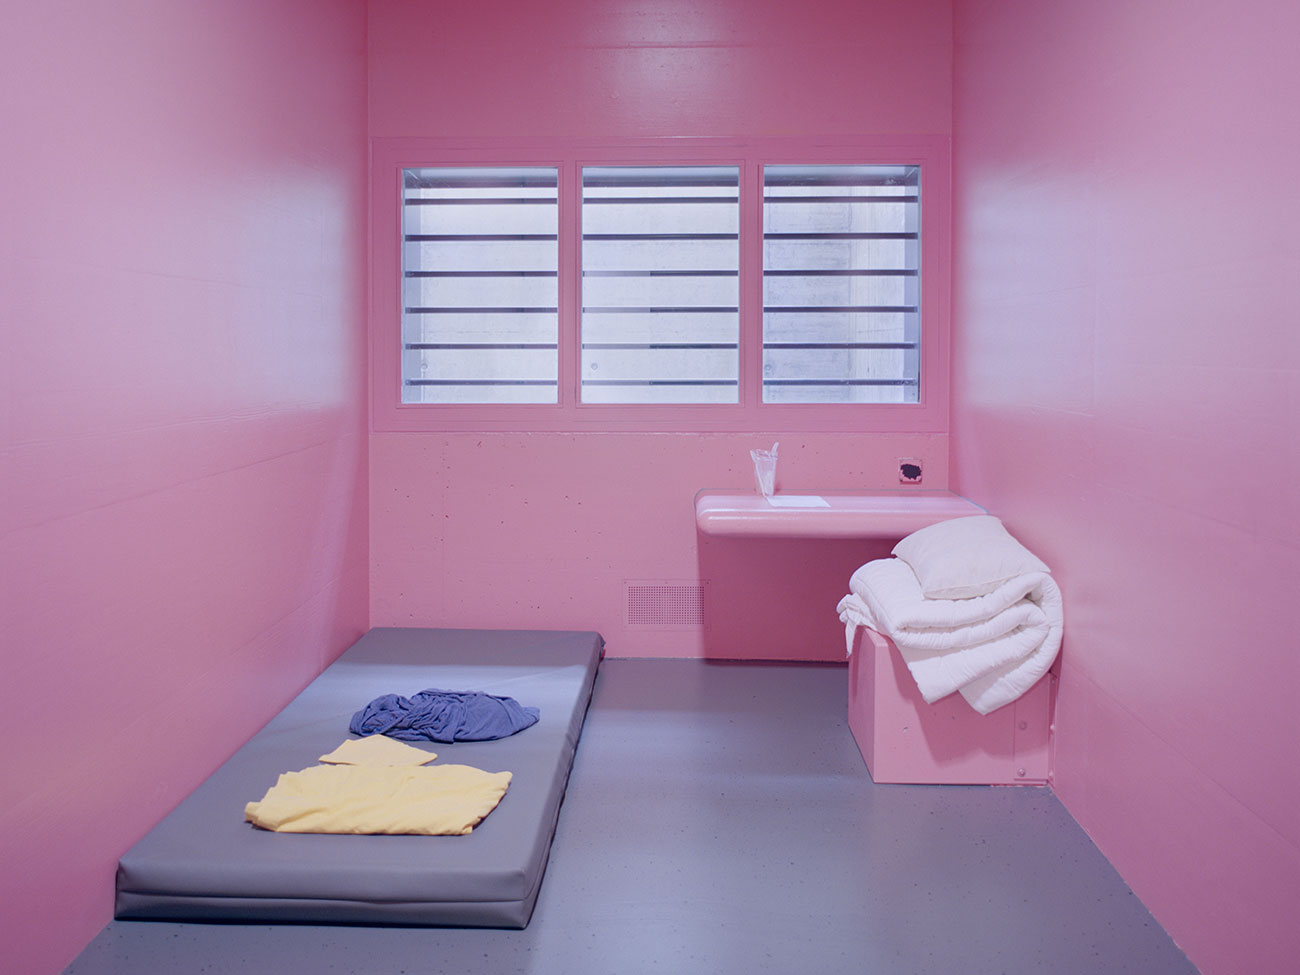 Angélique Stehli, Pink Cells, 2013 - 2017. Tirage contrecollé au mur © Angélique Stehli